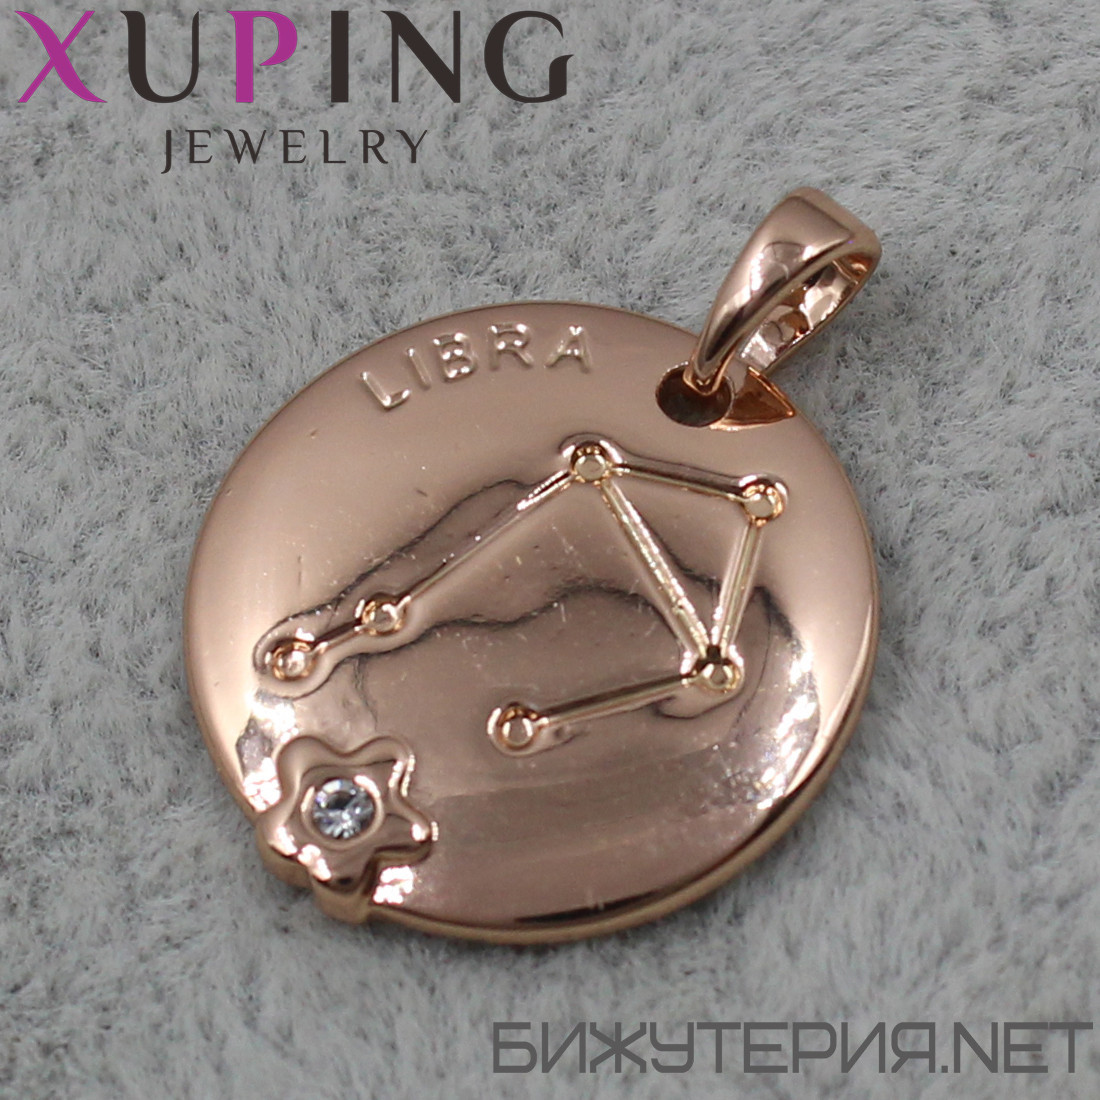 Кулон жіночий знак зодіаку ваги золото фірми Xuping Jewelry медичне золото діаметр 18 мм.